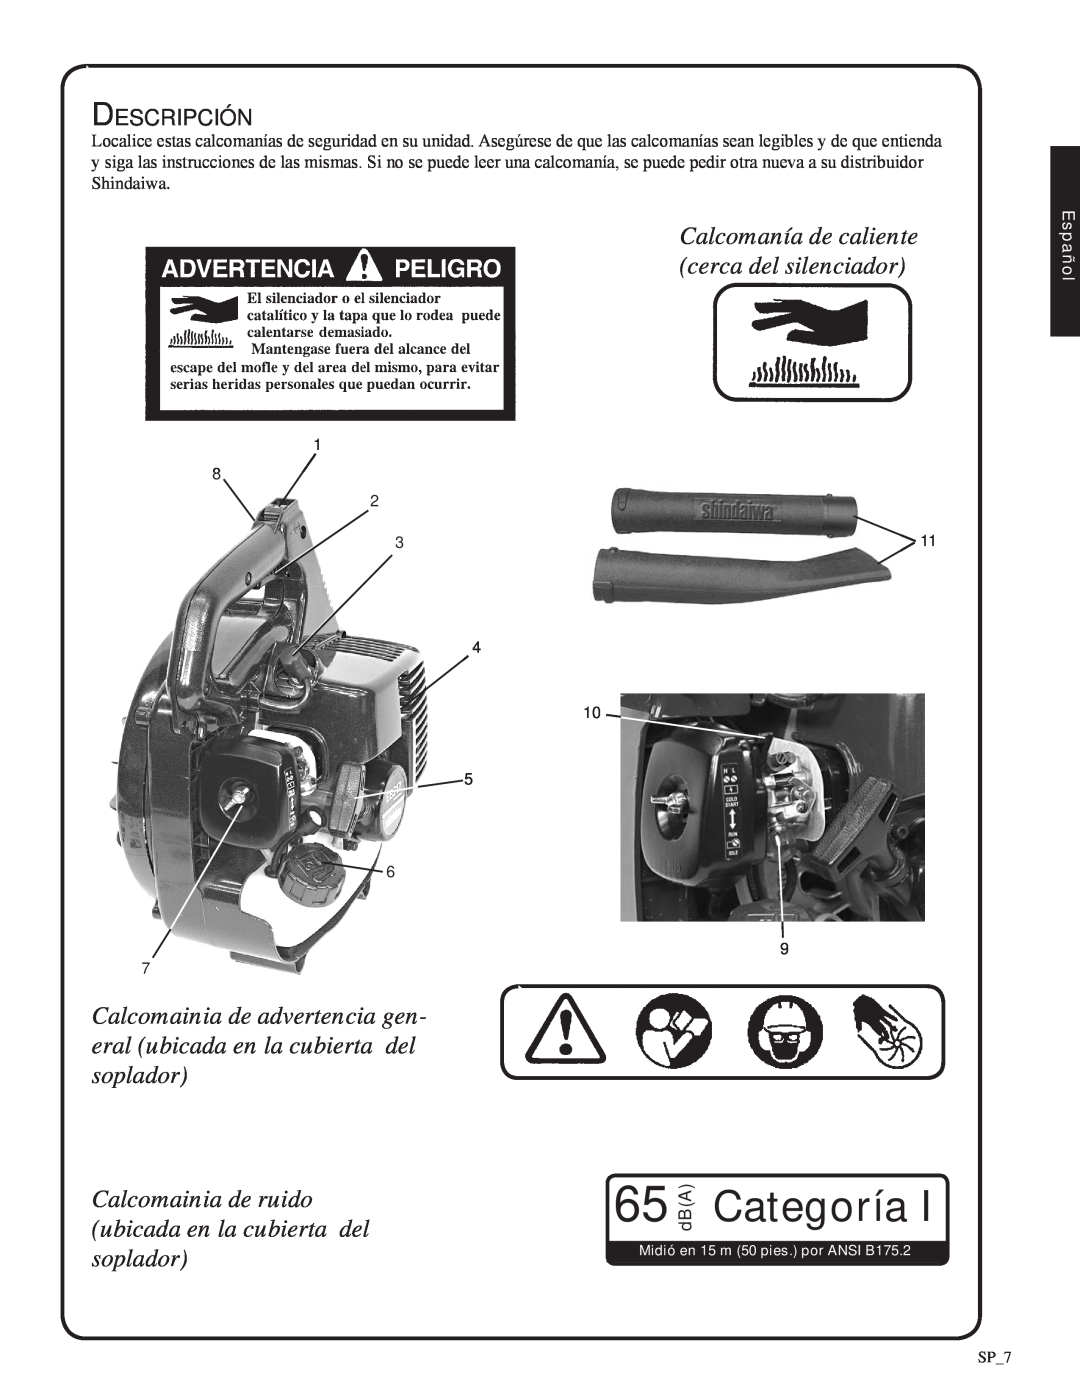 Shindaiwa 82051, EB212 manual Categoría, Calcomanía de caliente cerca del silenciador 